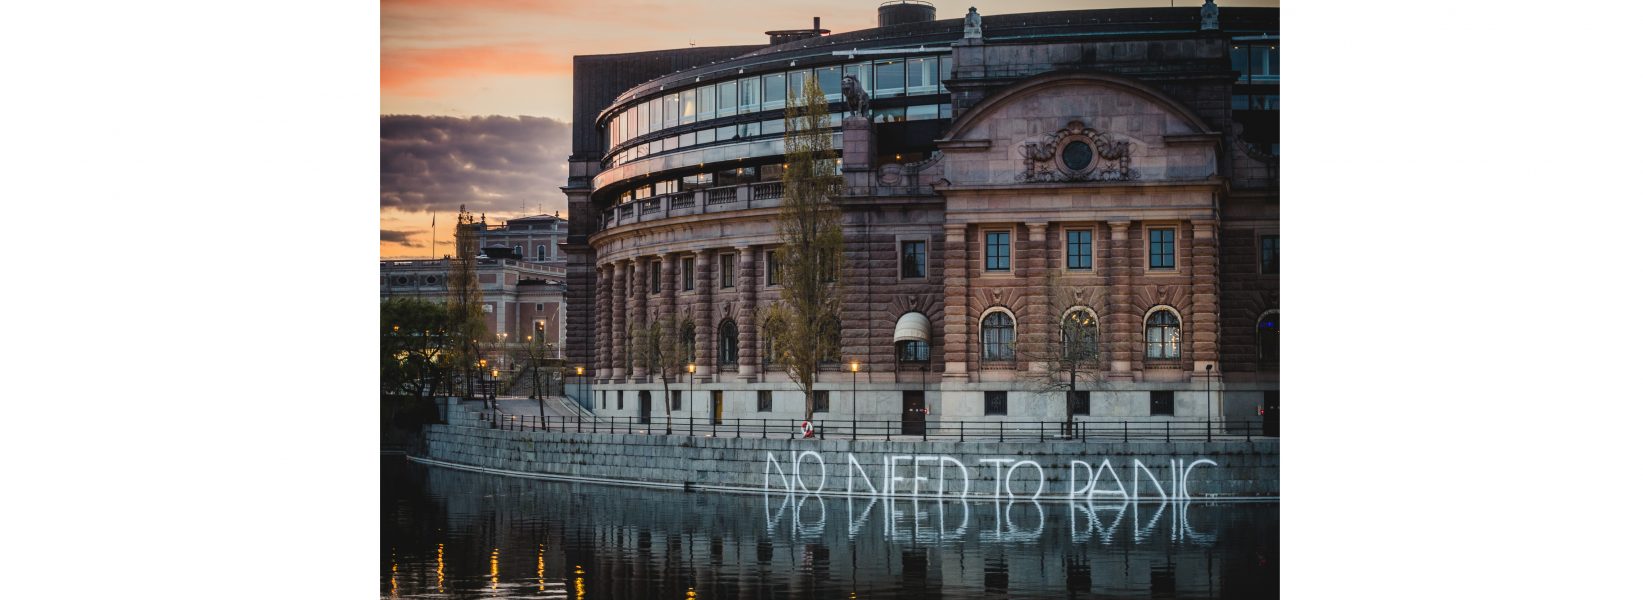 Förlagan till aktionen är gatukonstnären Banksys verk i Regent's canal i London, vars text lydde "I don't believe in global warming".